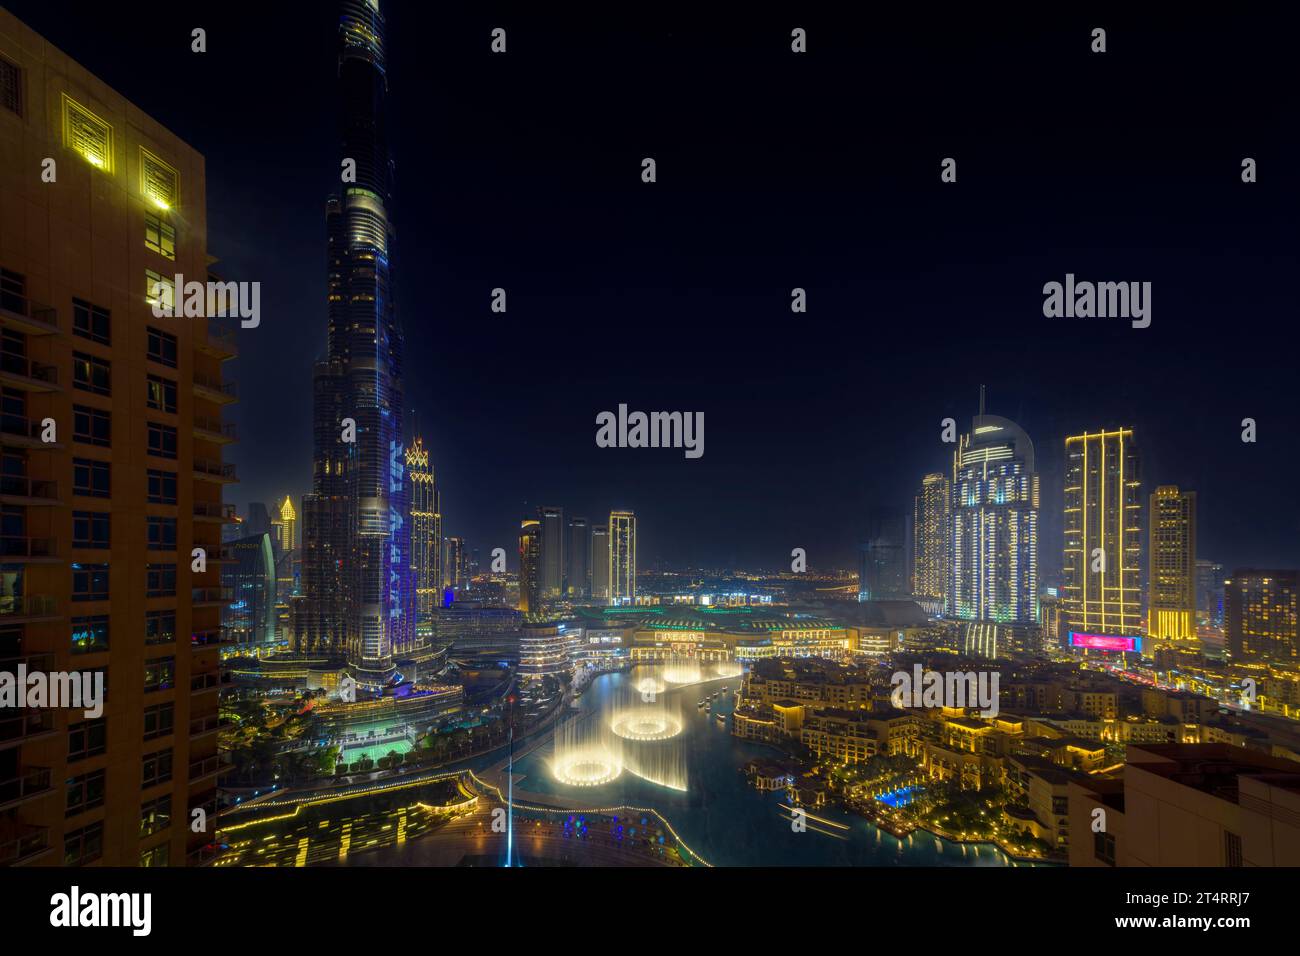 Vista nocturna aérea de alto ángulo del centro de Dubai, con el Dubai Mall, tiendas y fuente iluminada bajo el rascacielos Burj Khalifa en Dubai EAU. Foto de stock